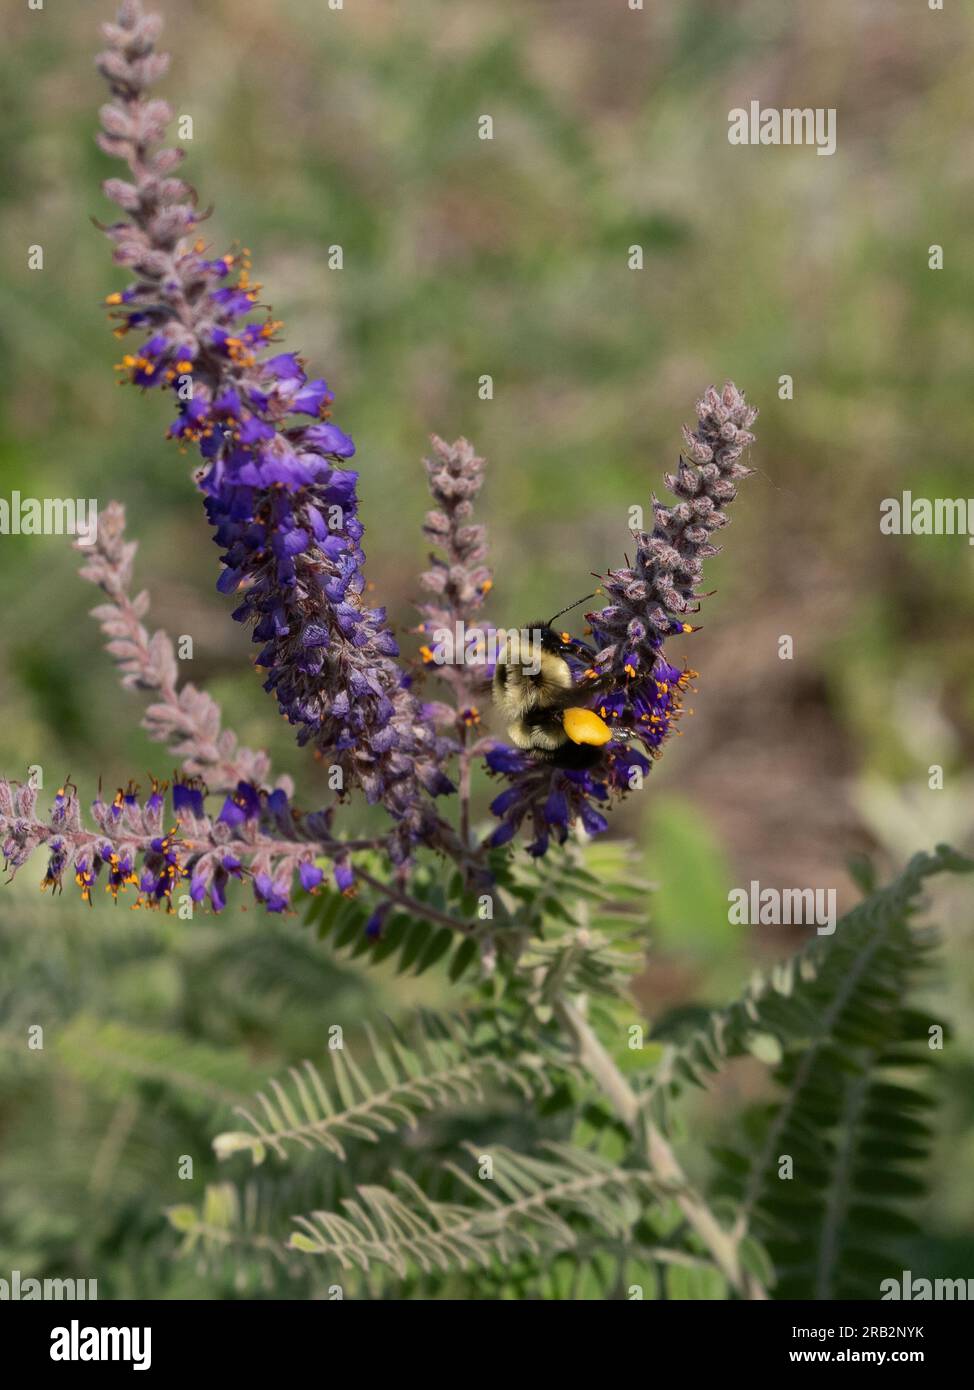 Honigbiene mit vollen Pollenkörben, die mehr Pollen aus violetten Blüten auf einer Bleipflanze oder Amorpha canescens in Minnesota sammeln. Stockfoto